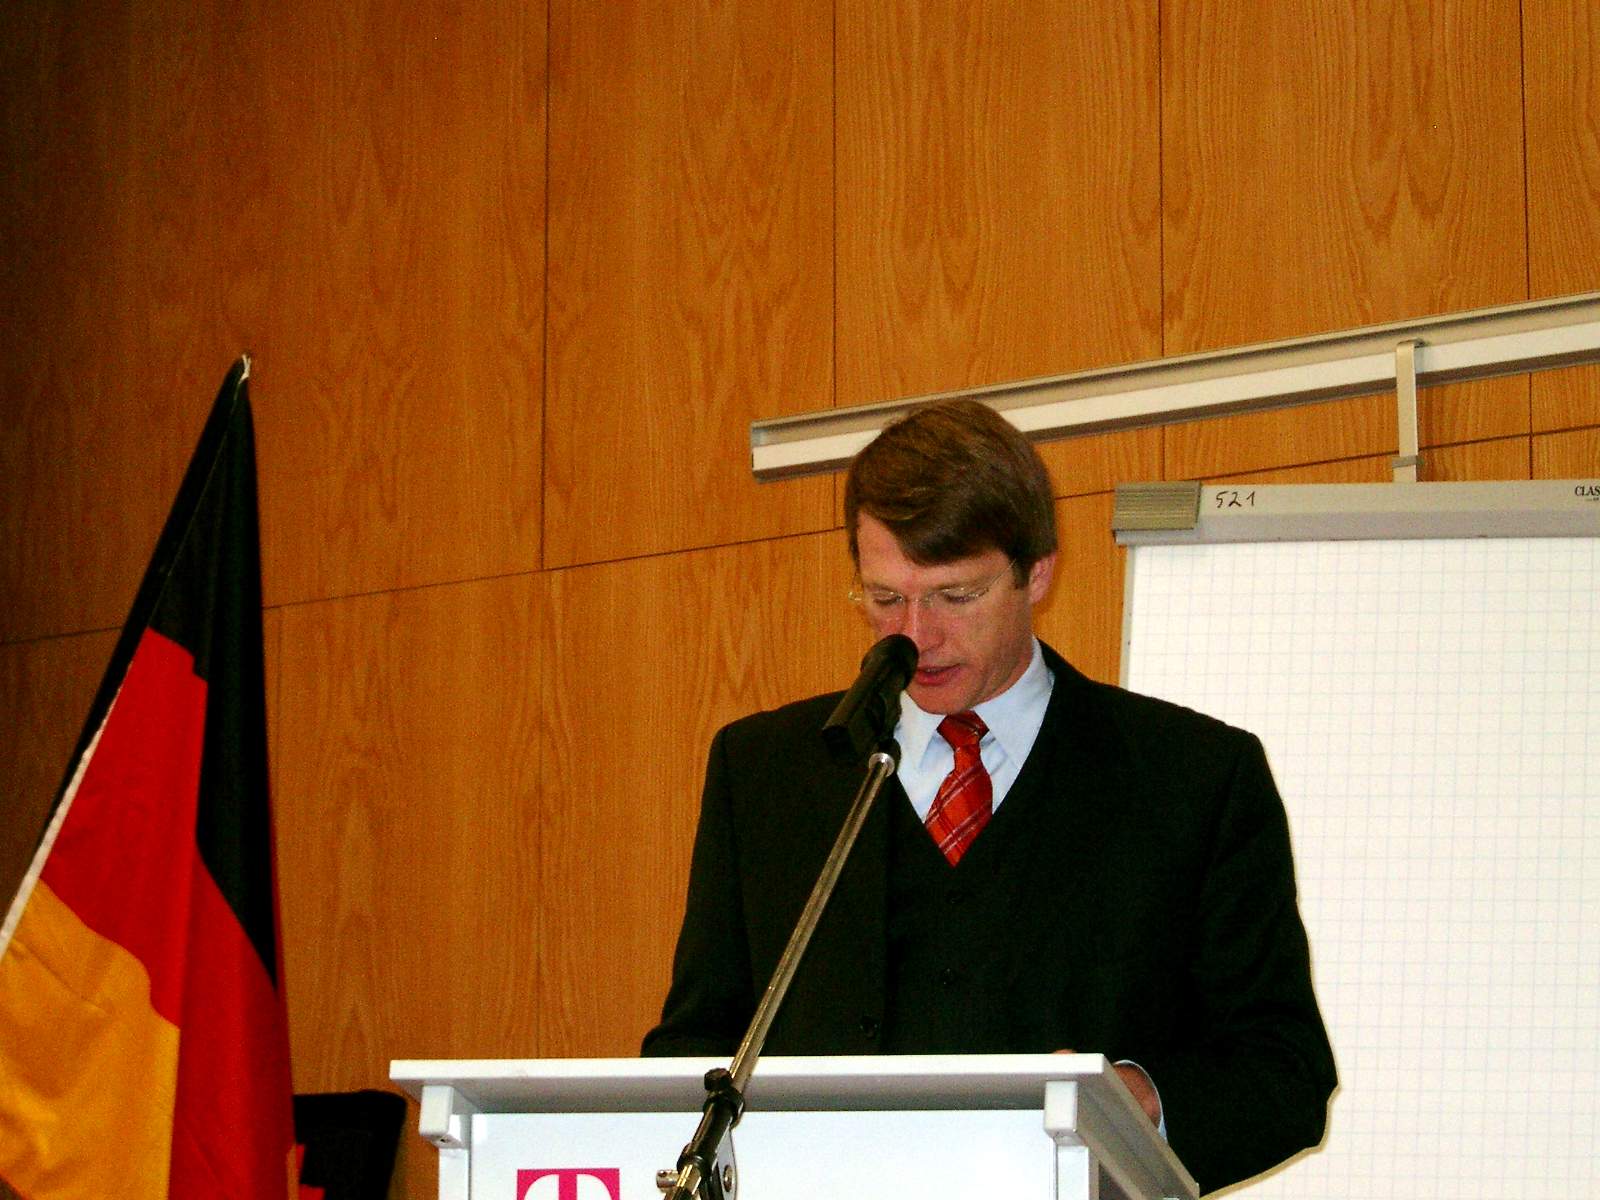 Staatsrat Dr. Stefan Schulz